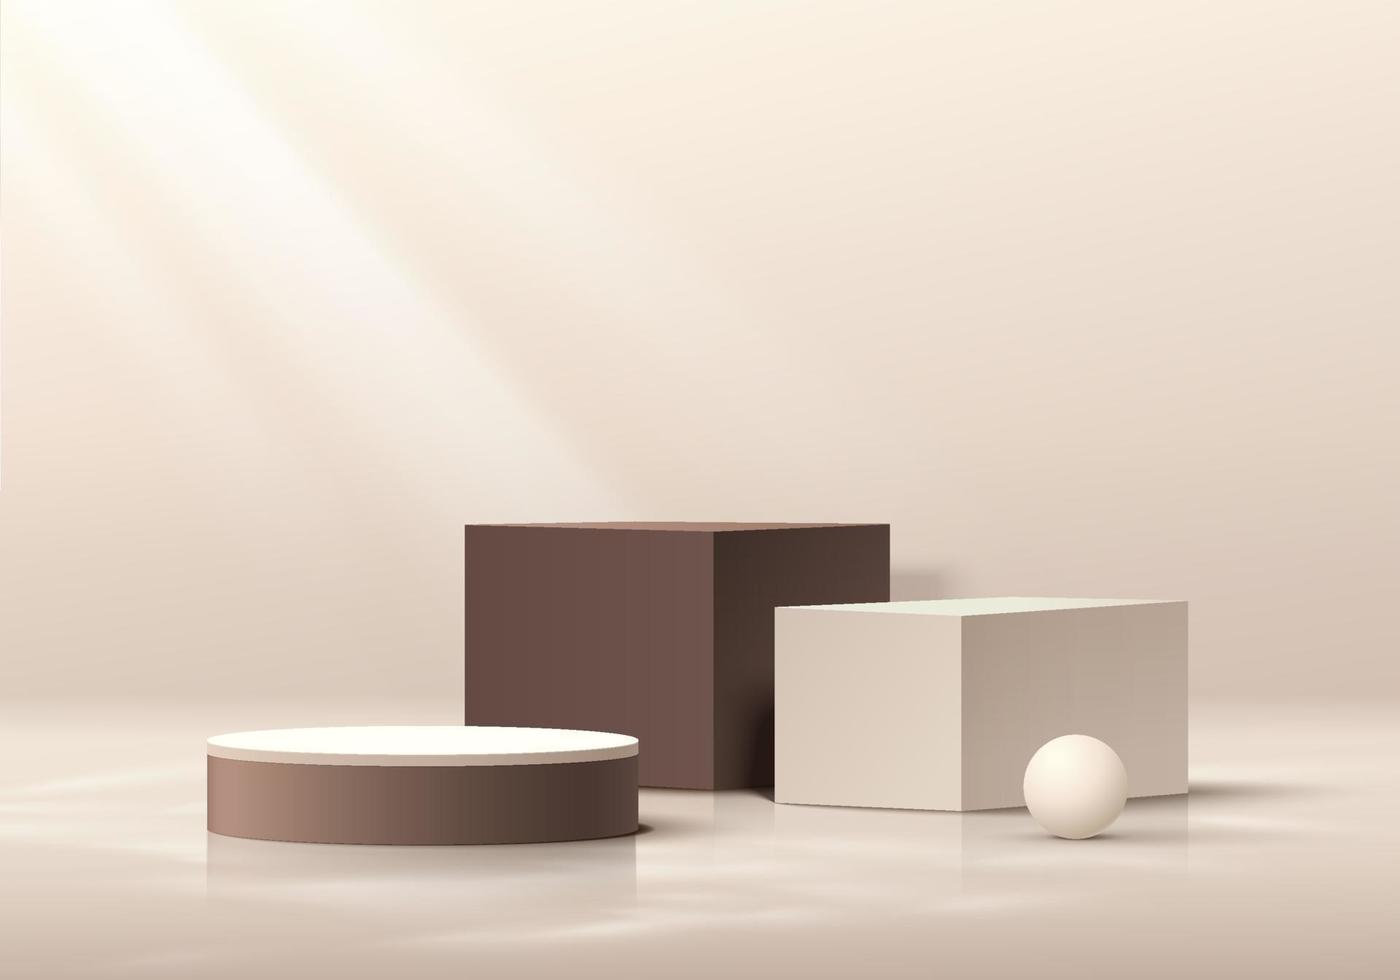 realistische crème kubus en bruin cilinder voetstuk podium in abstracte 3D-achtergrond. minimale wandscène voor mockup-producten podium voor showcase, promotieweergave. vector geometrische vormen ontwerp.